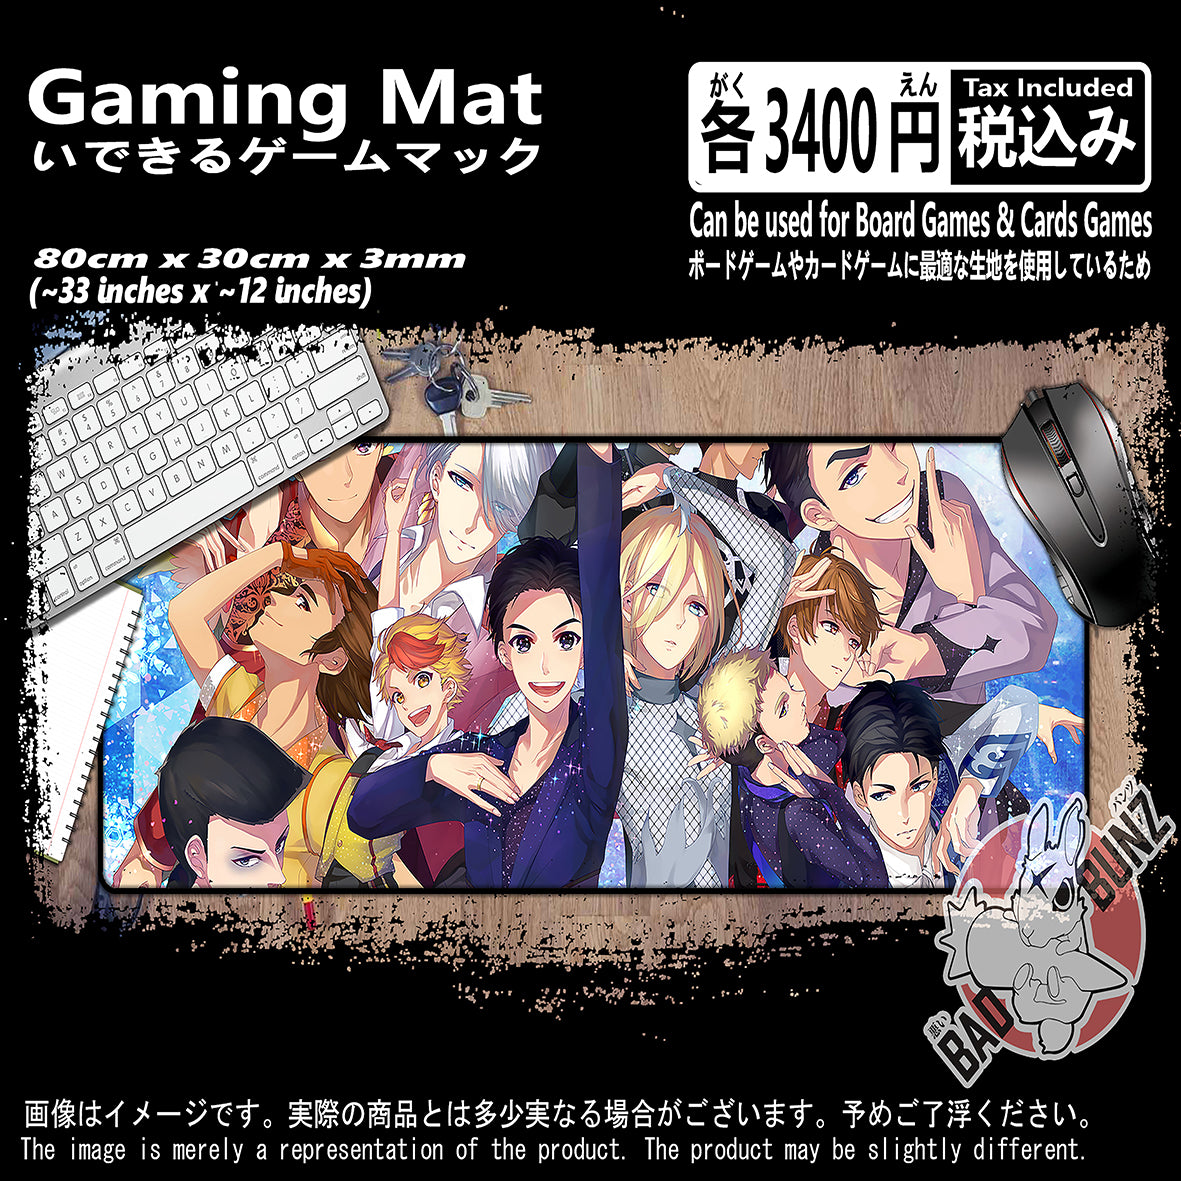 (ZZ-YURI-01) Yuri on Ice Anime 800mm x 300mm Gaming Play Mat